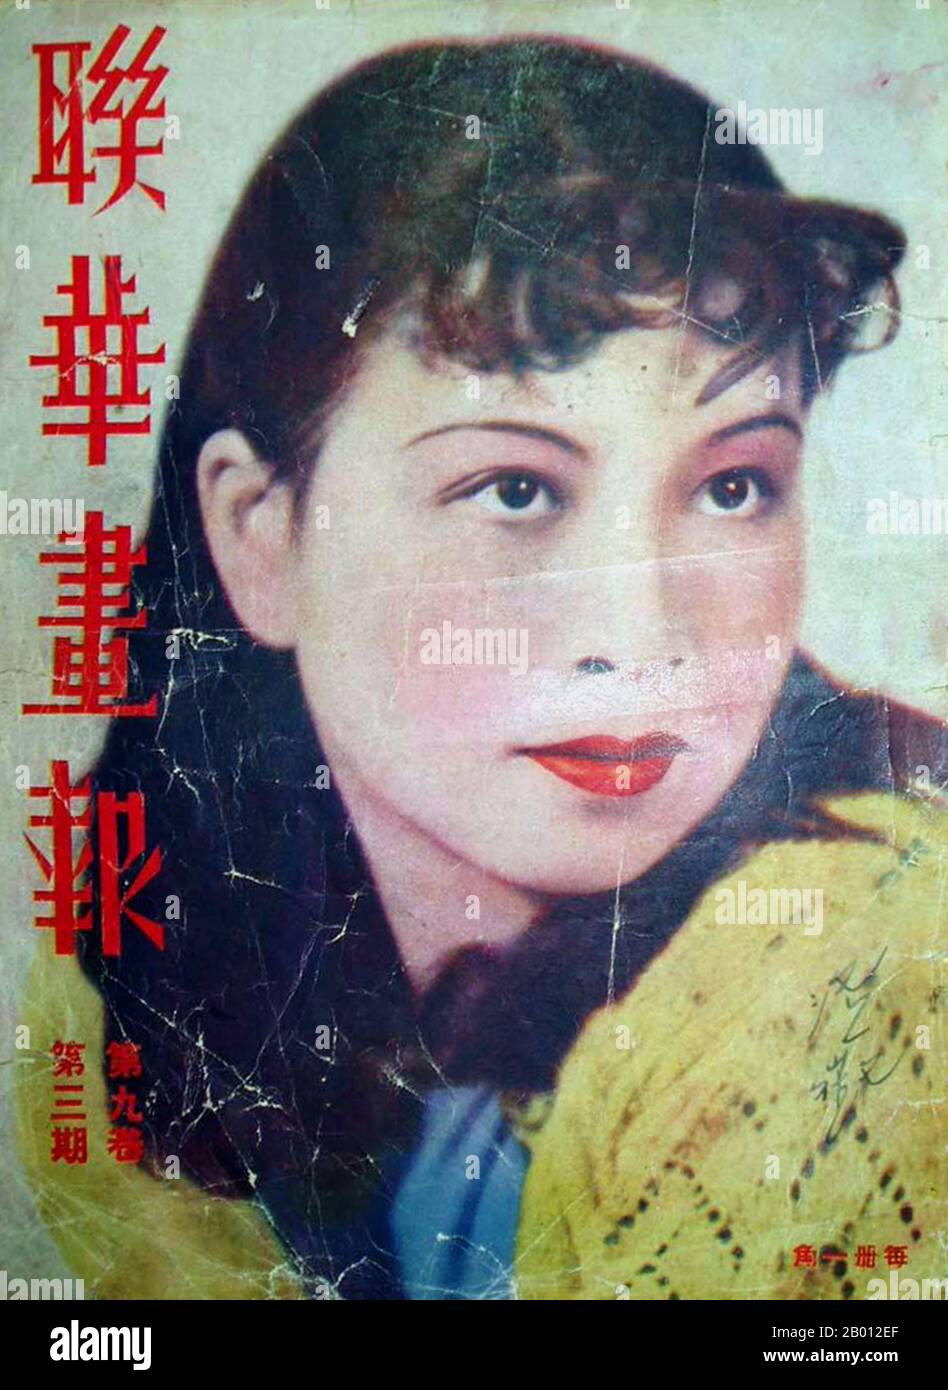 Chine: Jiang Qing (1914-1991), la future Madame Mao, dans une affiche de film de Shanghai des années 1930 quand elle a agi sous le nom de scène LAN Ping. Jiang Qing (Chiang CH'ing, 1914 mars – 14 mai 1991) était le pseudonyme utilisé par la dernière femme du dirigeant chinois Mao Zedong et le grand personnage du Parti communiste chinois du pouvoir. Elle est allée par le nom de scène LAN Ping au cours de sa carrière d'acteur, et a été connu par divers autres noms pendant sa vie. Elle a épousé Mao à Ya'an en novembre 1938, et est parfois appelée Madame Mao dans la littérature occidentale, servant de première dame de la Chine communiste. Banque D'Images